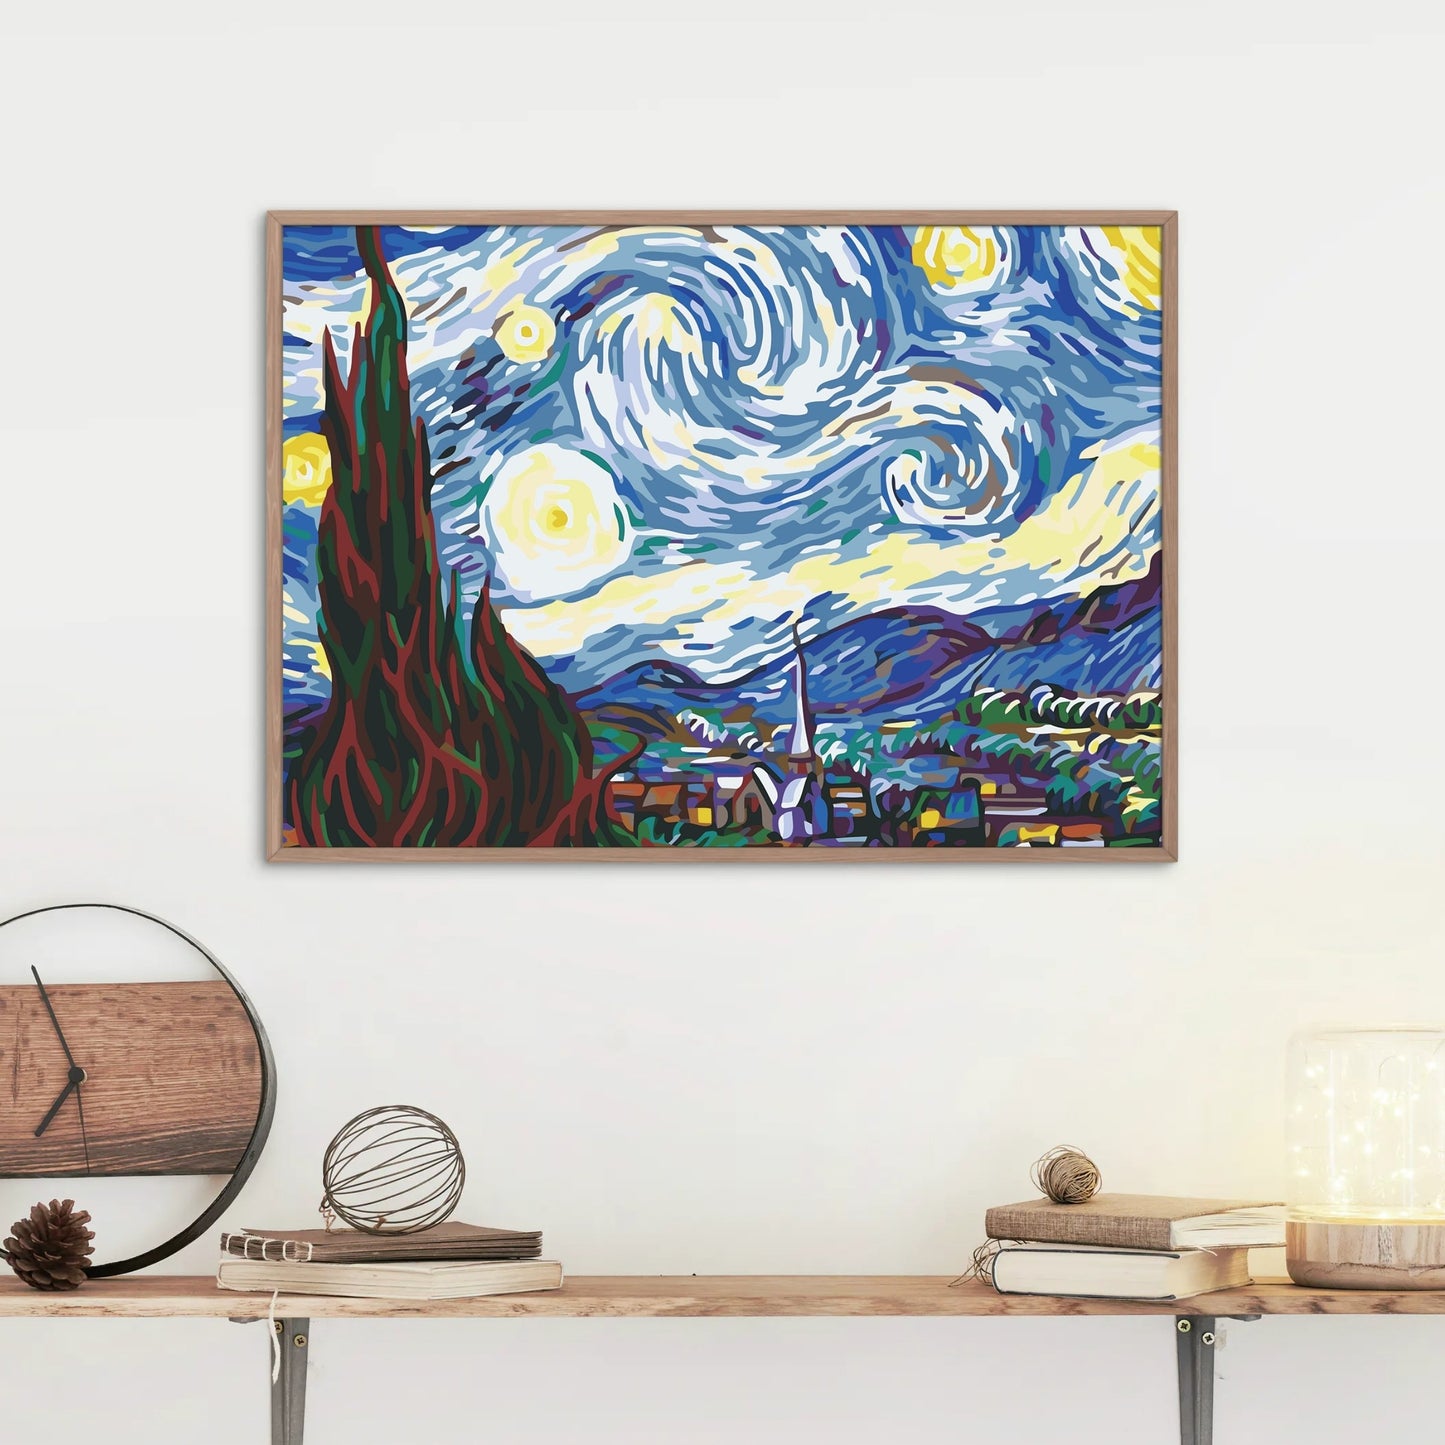 STJERNENATTEN -Vincent van Gogh